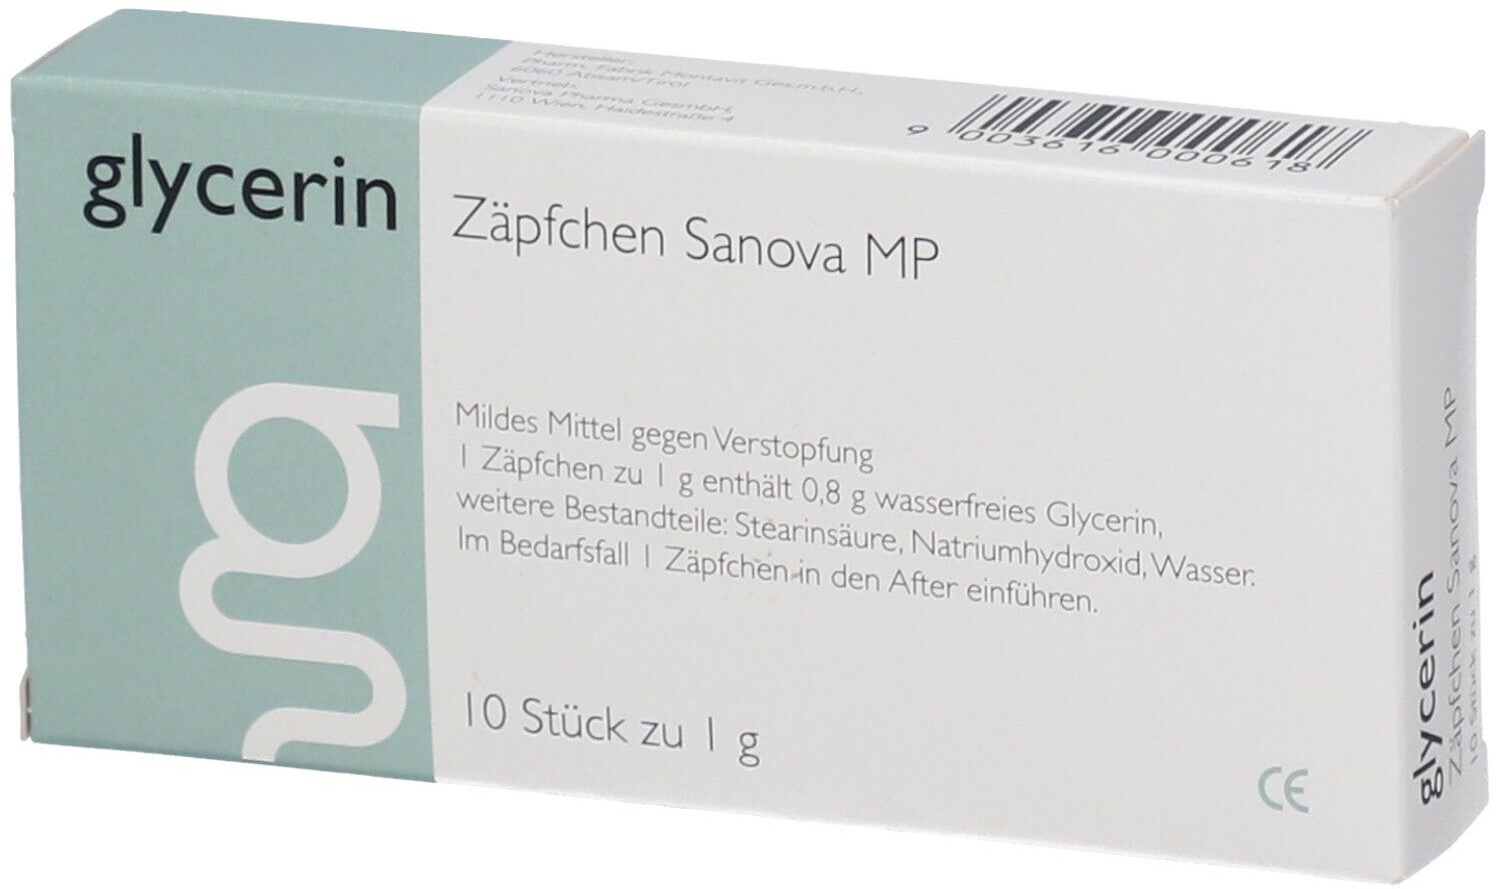 glycerin Zäpfchen Sanova MP 1 g Suppositorien 10 St 10 St Suppositorien